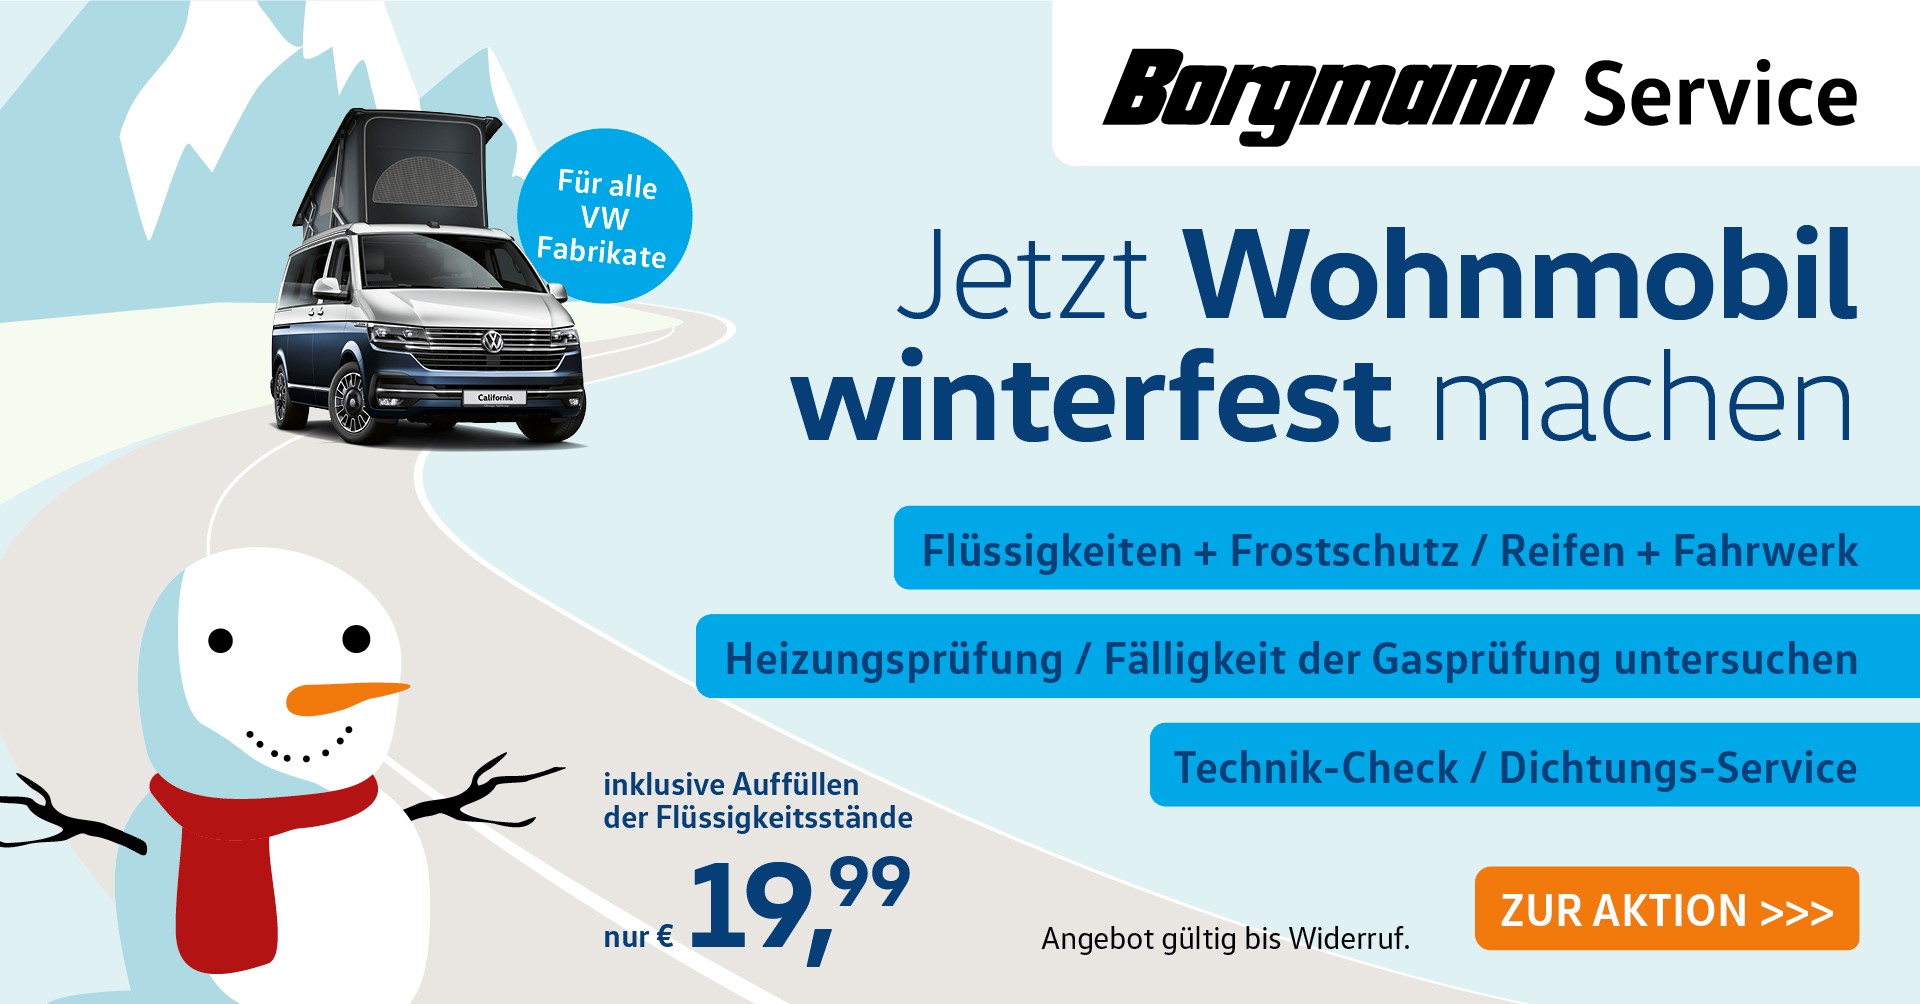 Wohnmobil Winter-Check  Wohnmobil winterfest machen bei Borgmann!